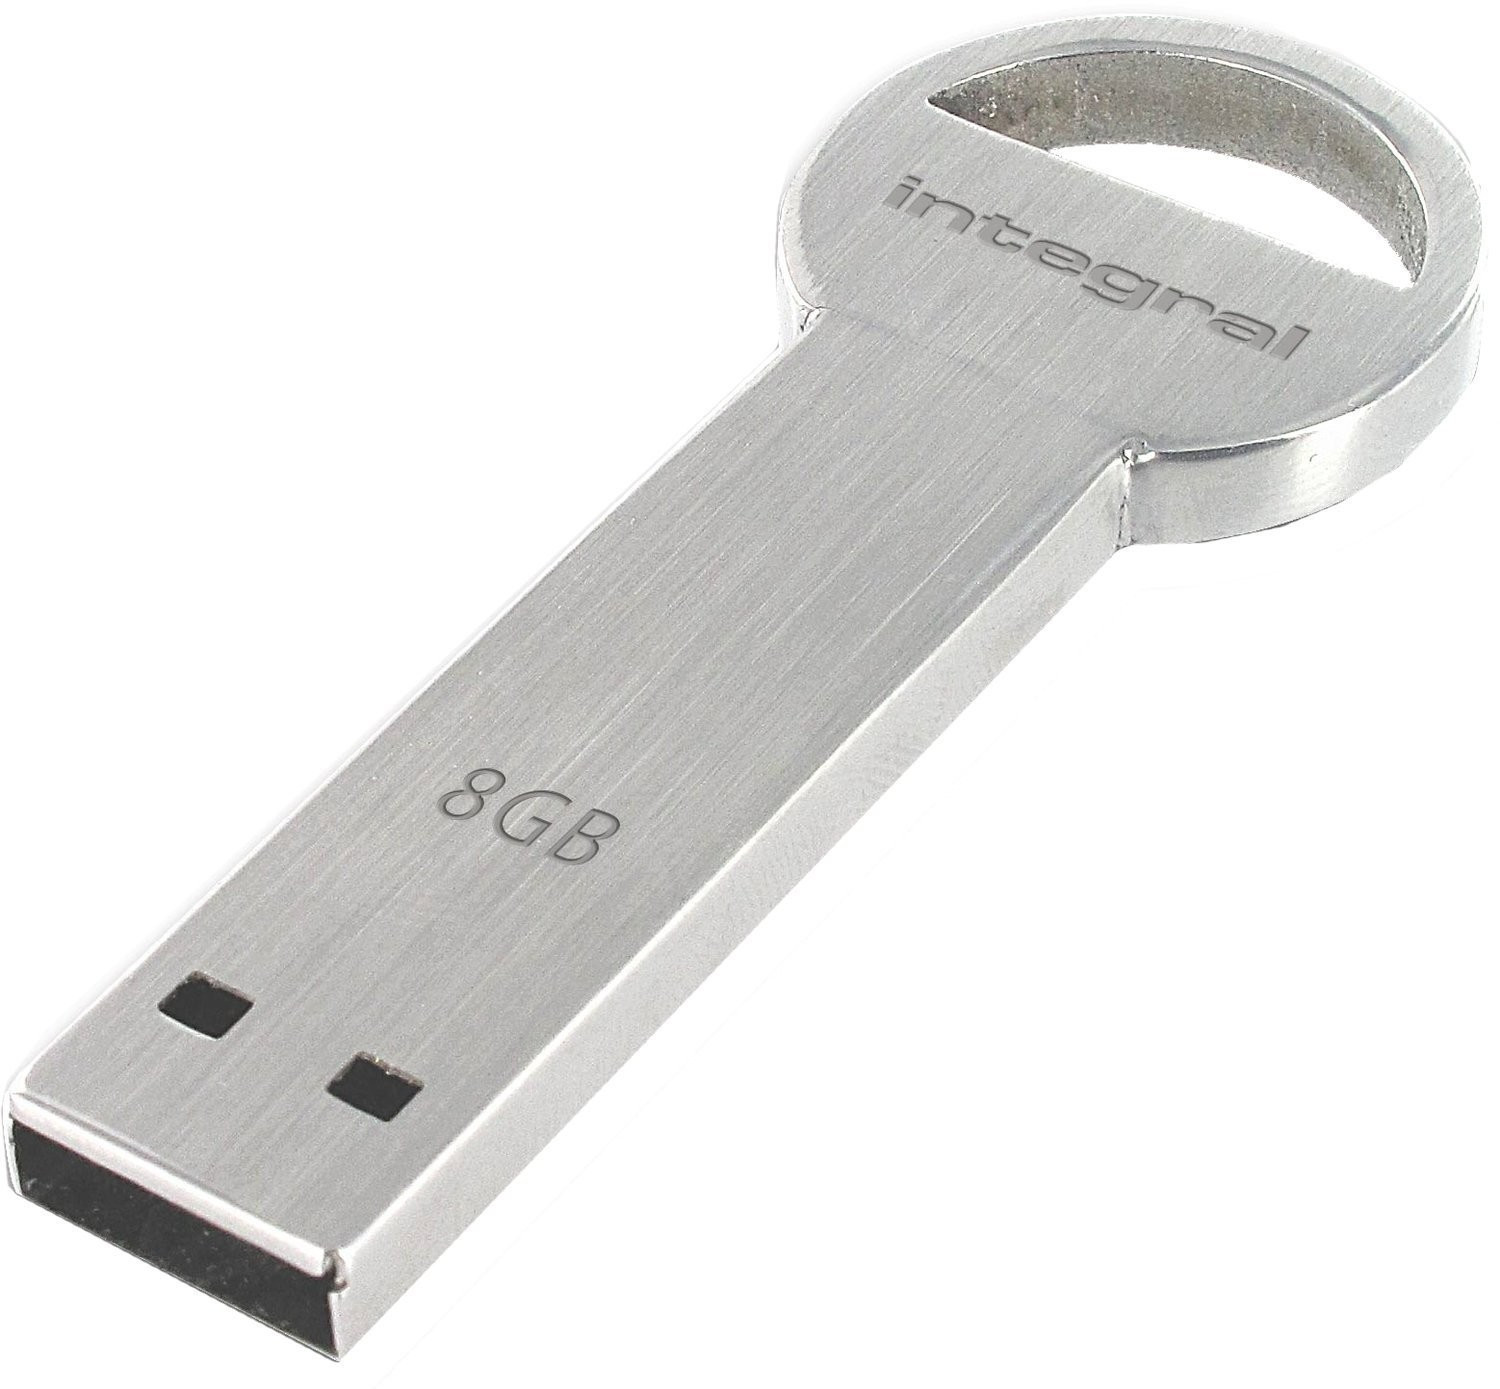 Integral Key USB Flash Drive 8GB